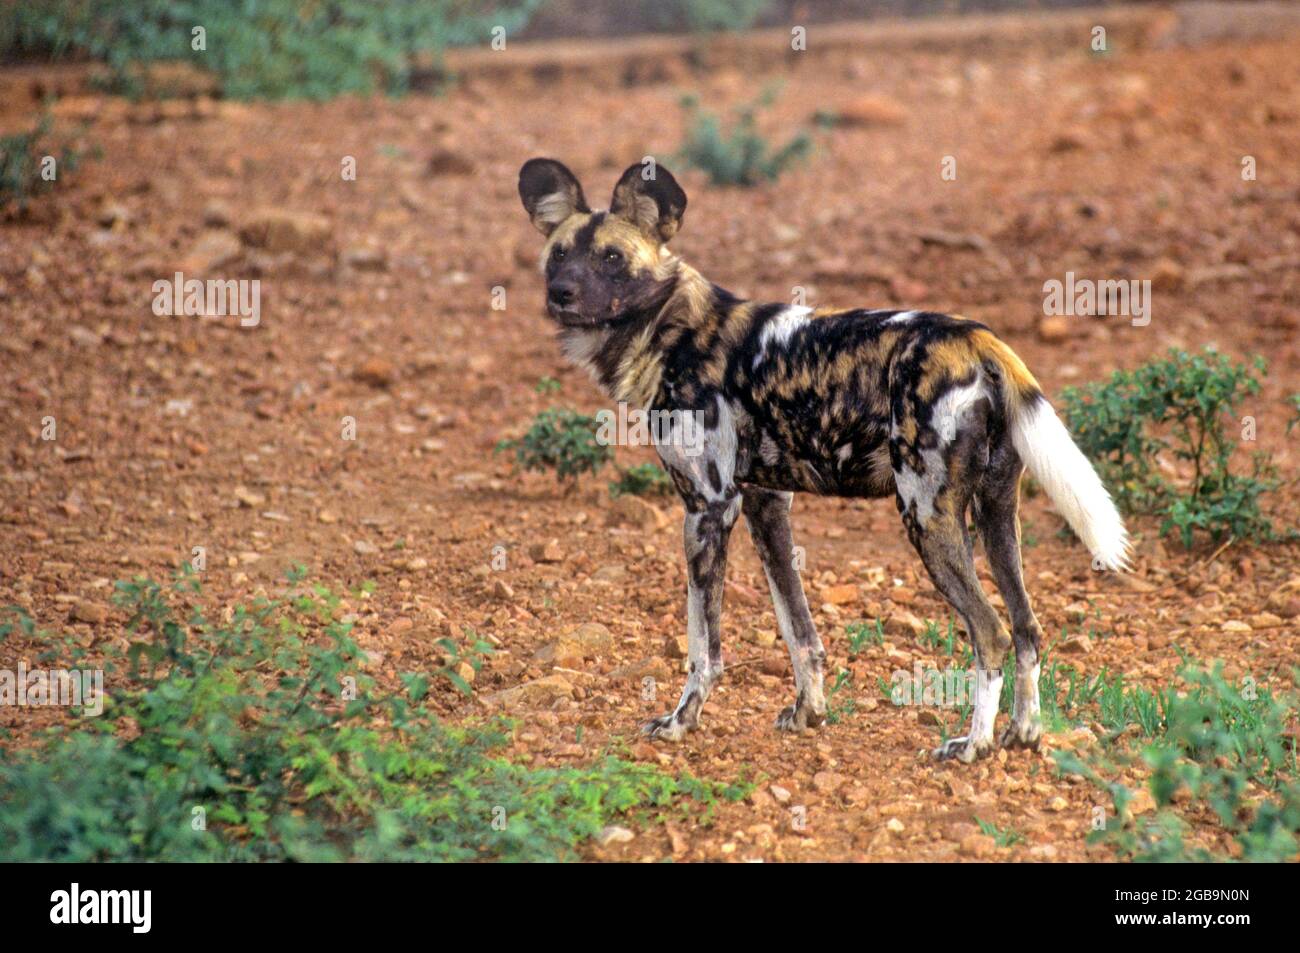 Le chien sauvage africain (Lycaon pictus) est un chien qui est une espèce indigène de l'Afrique sub-saharienne. C'est la plus grande canine sauvage d'Afrique, et l'onl Banque D'Images